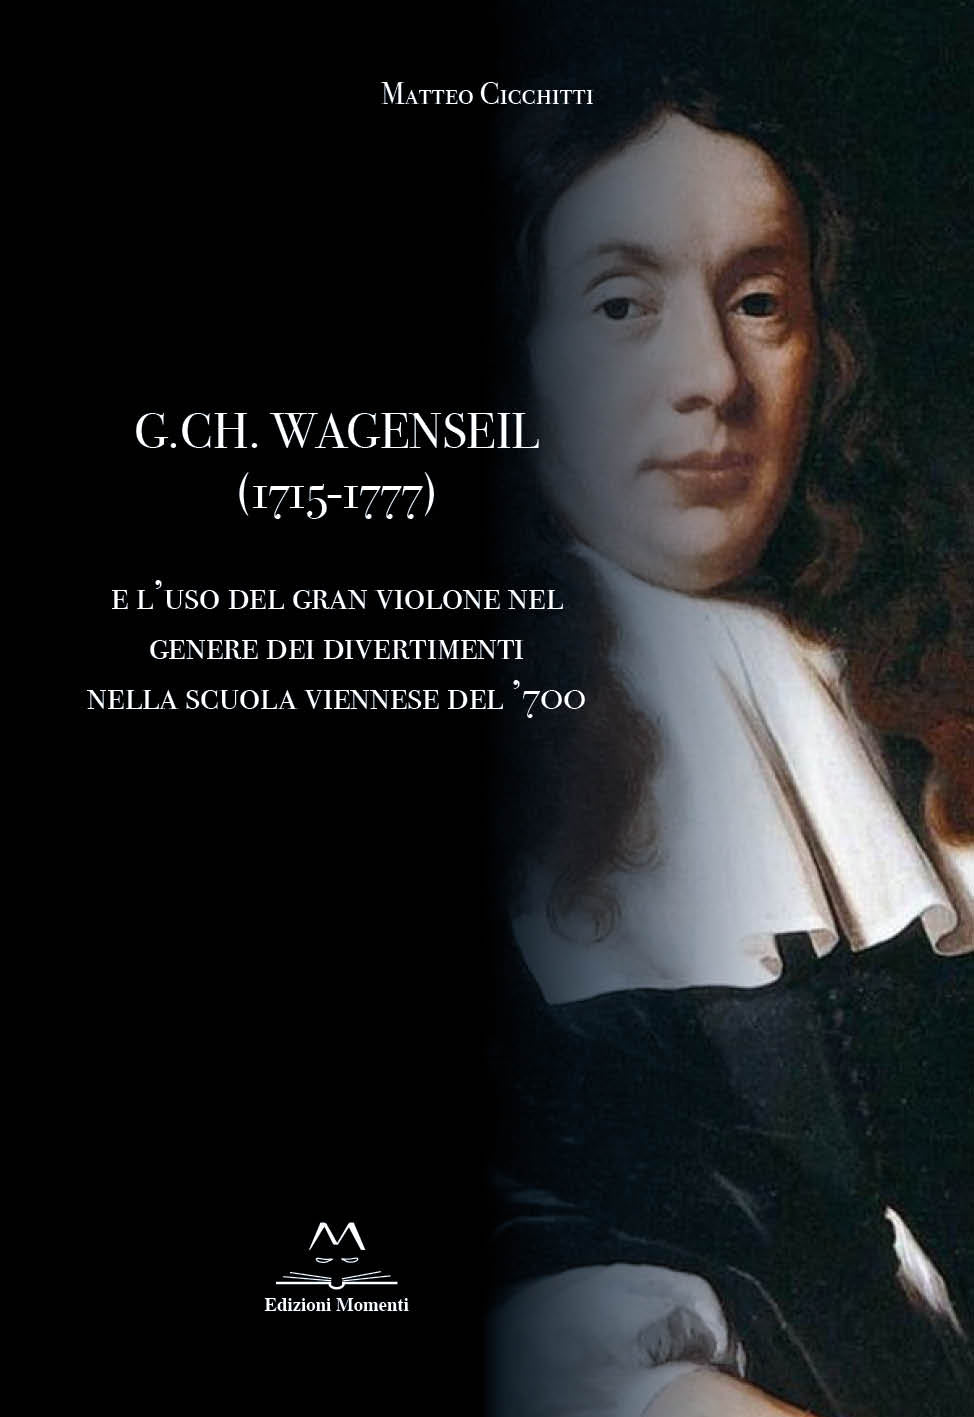 G. CH. Wagenseil (1715-1777) di Matteo Cicchitti